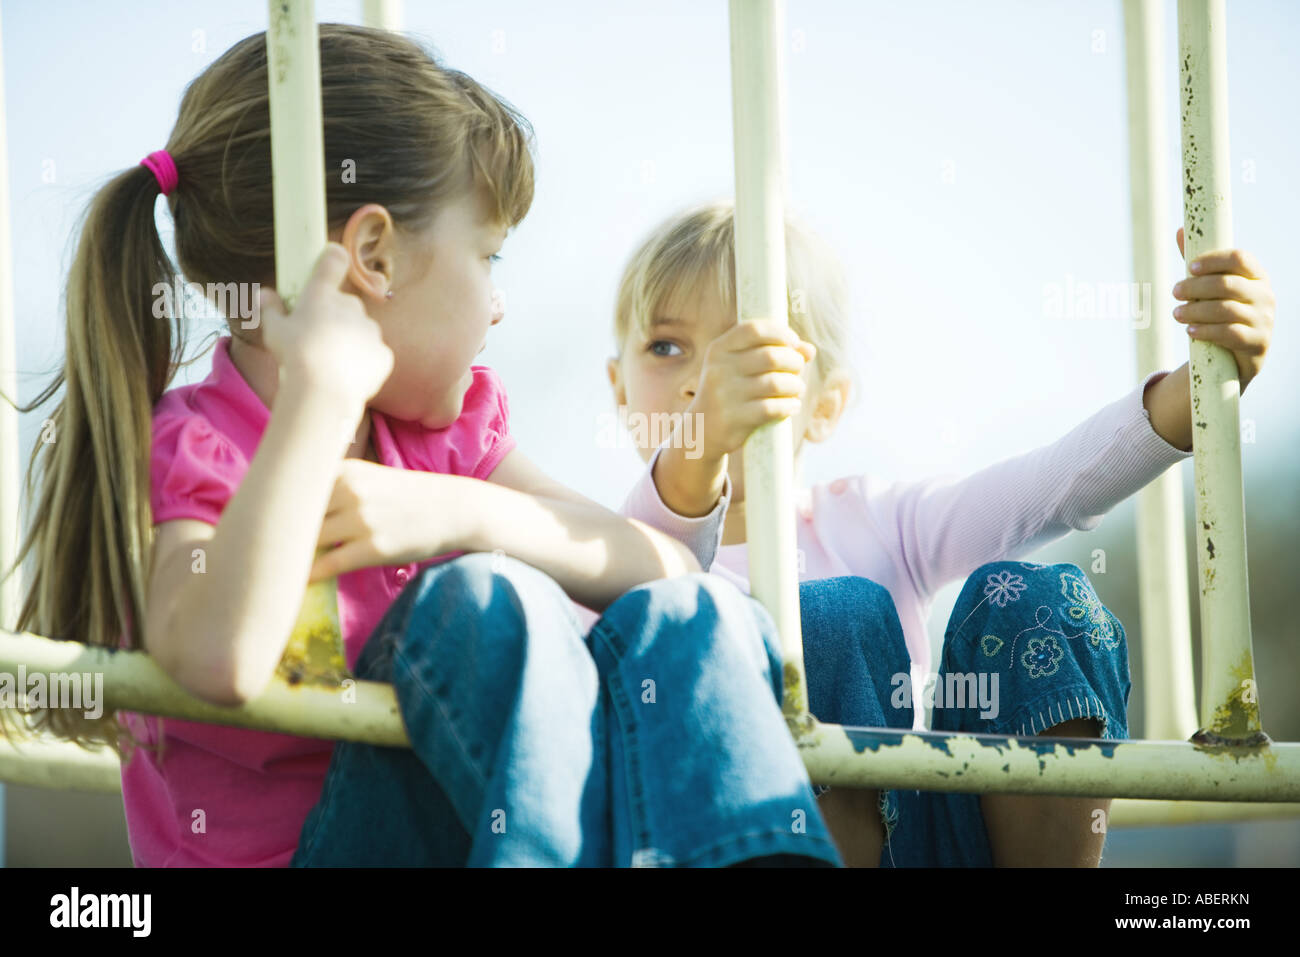 Children on playground equipment Stock Photo